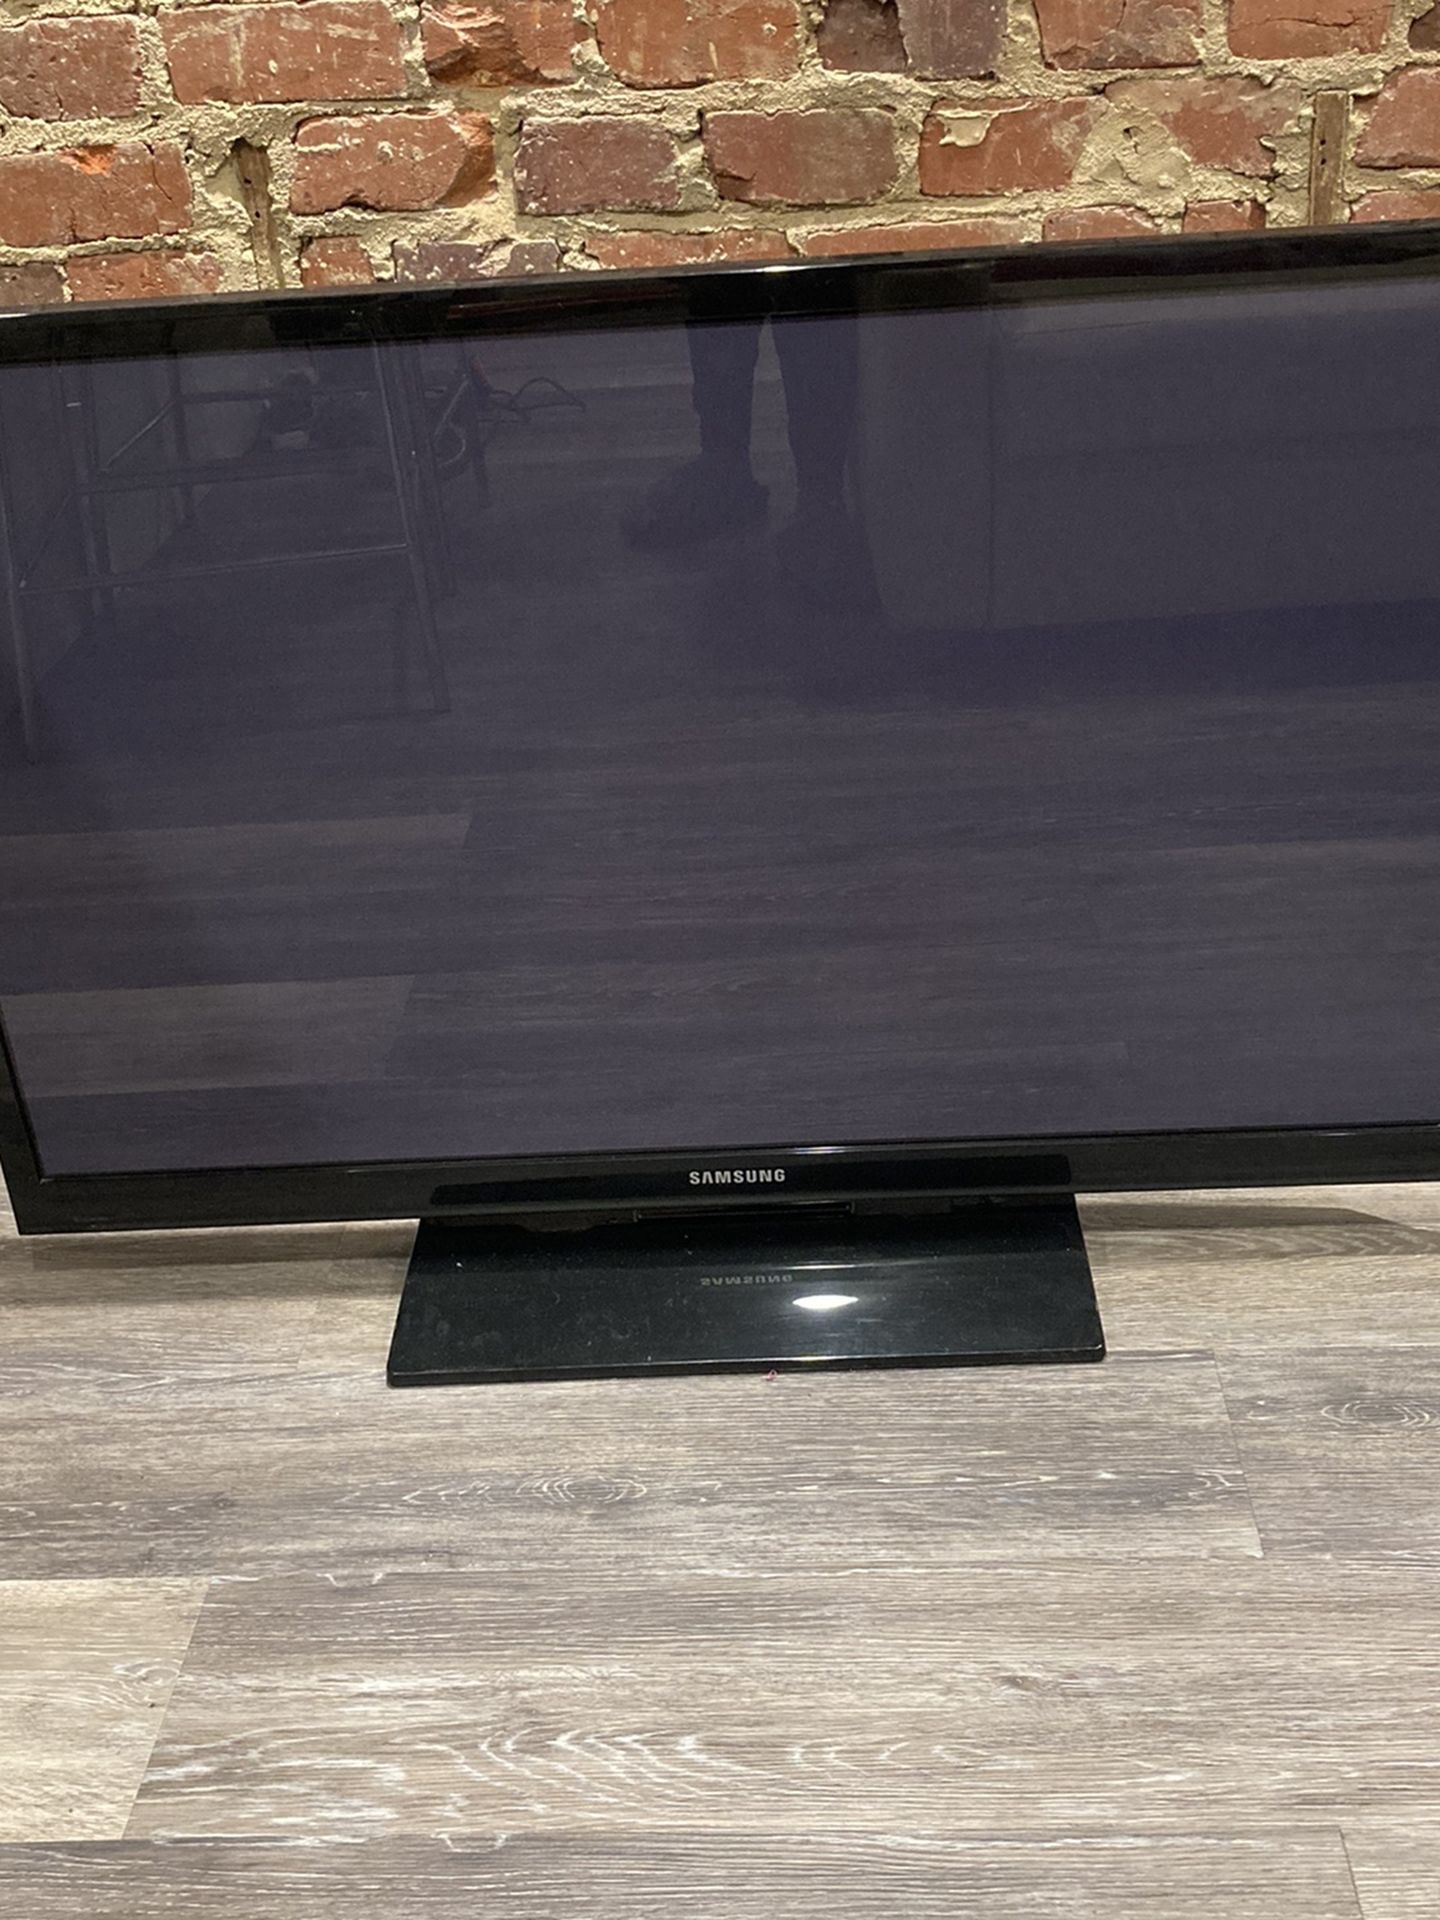 43” flat screen Samsung PDP TV